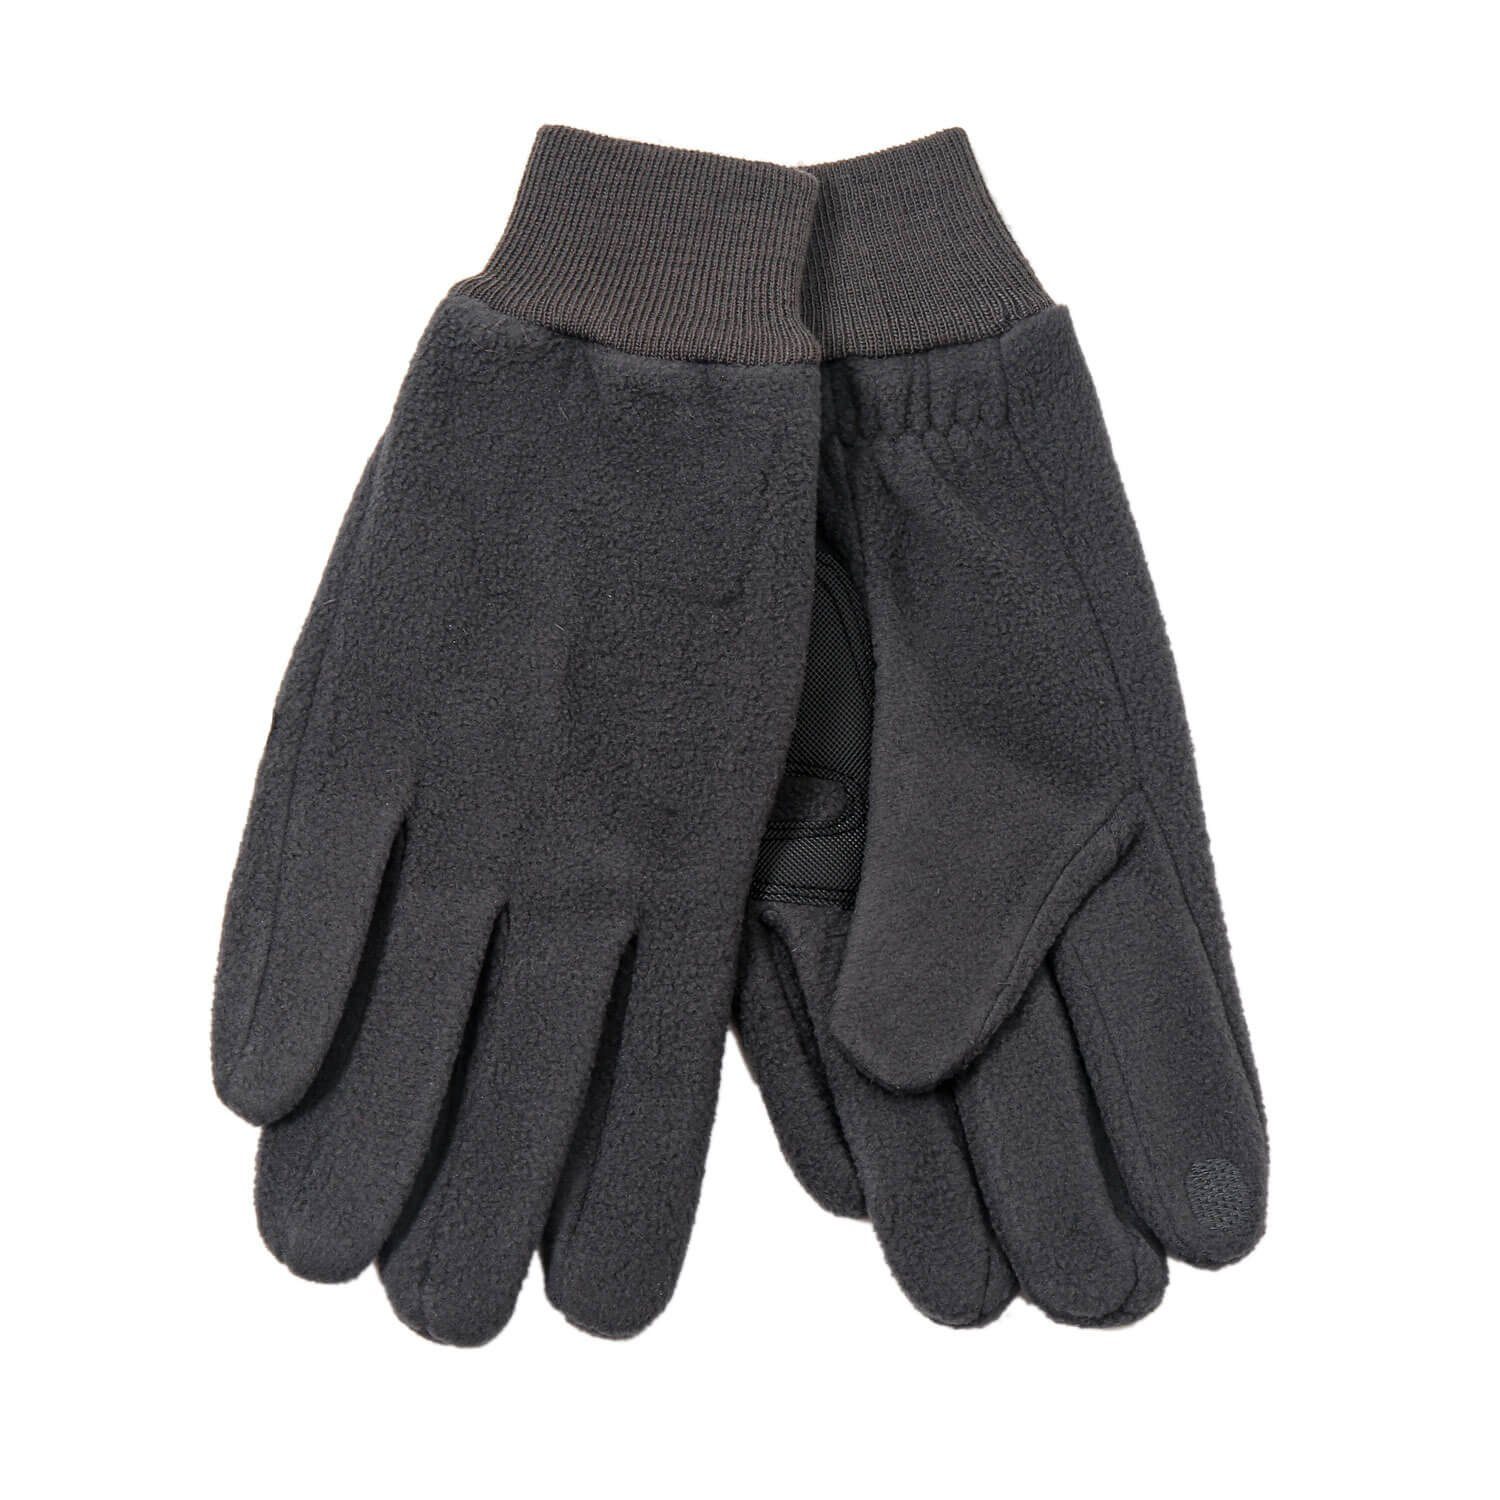 Leoberg Strickmütze Herren Handschuhe Winterhandschuhe in verschiedenen Farben und Designs Grau-252002